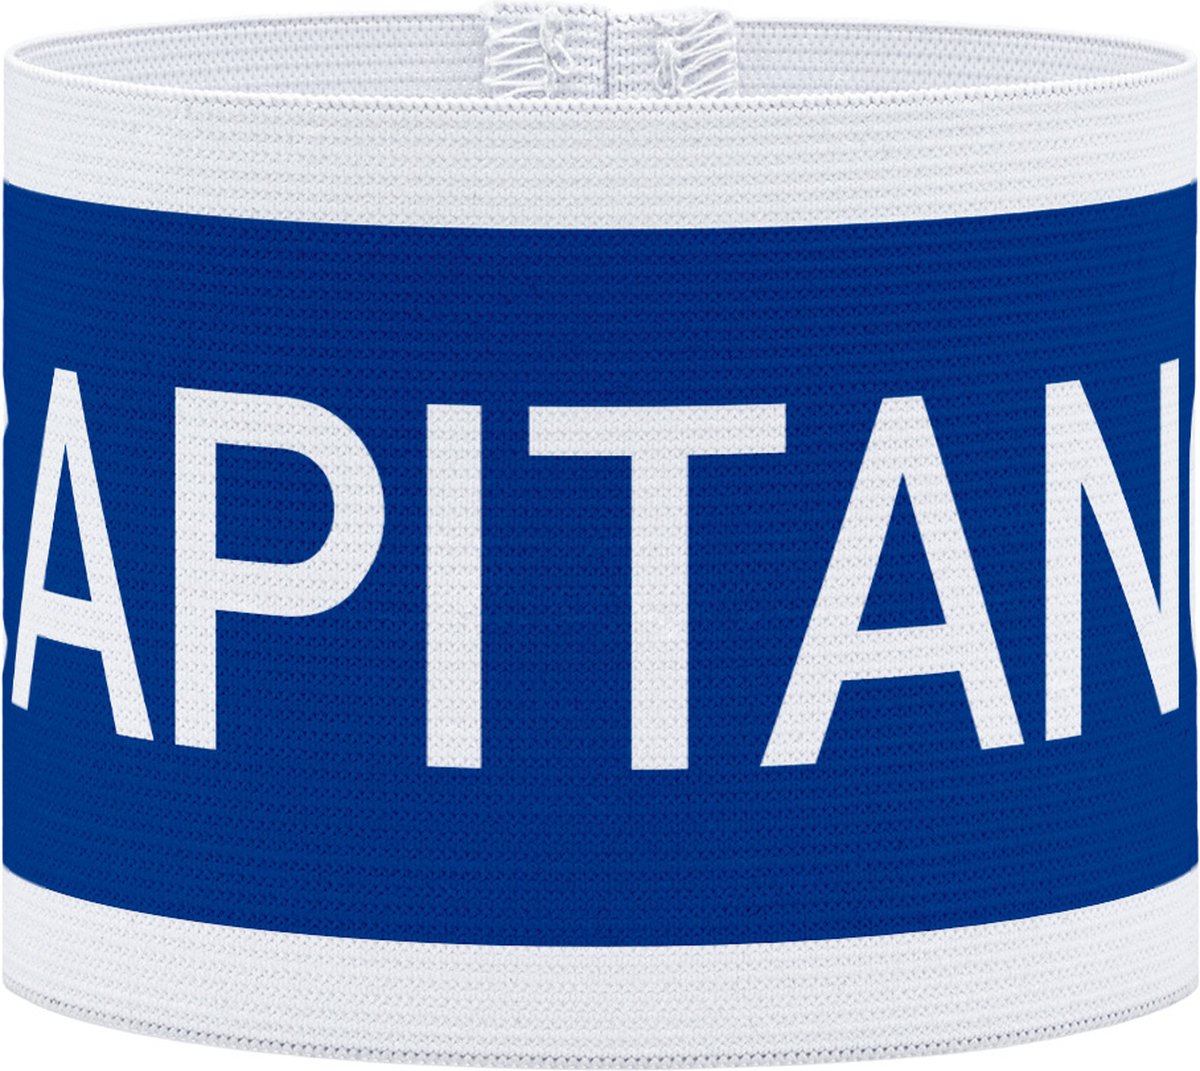 Aanvoerdersband - Captain - Blauw / Wit - L